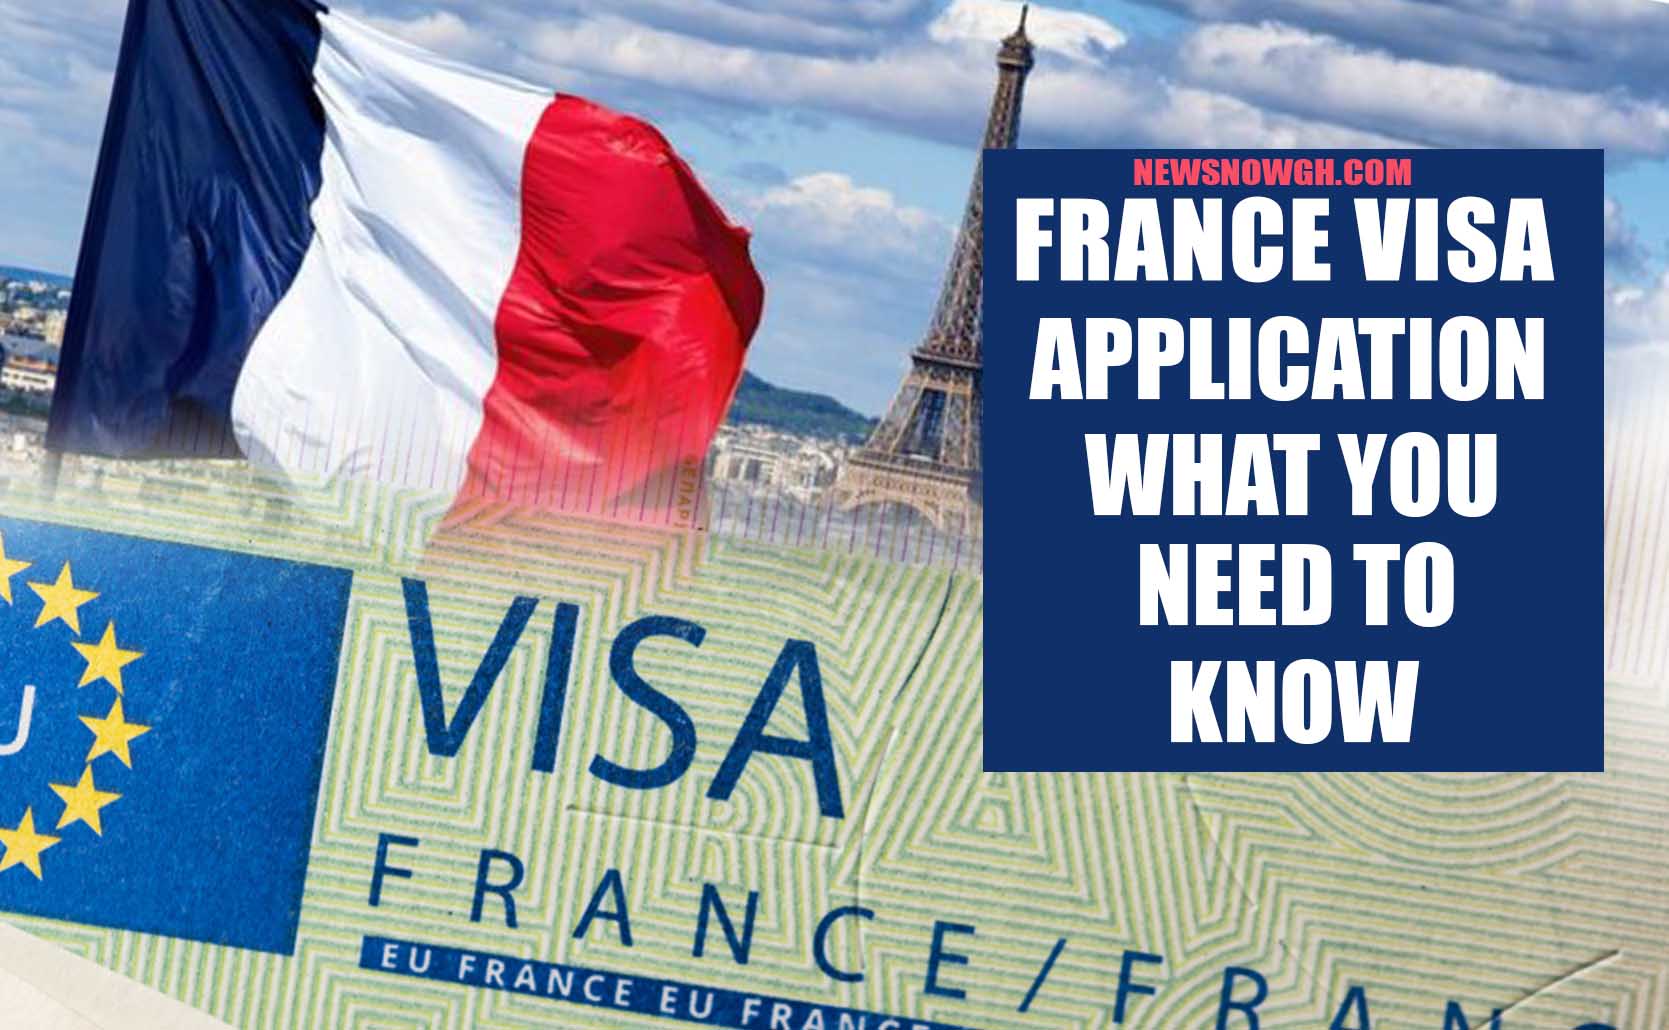 france travel insurance for visa